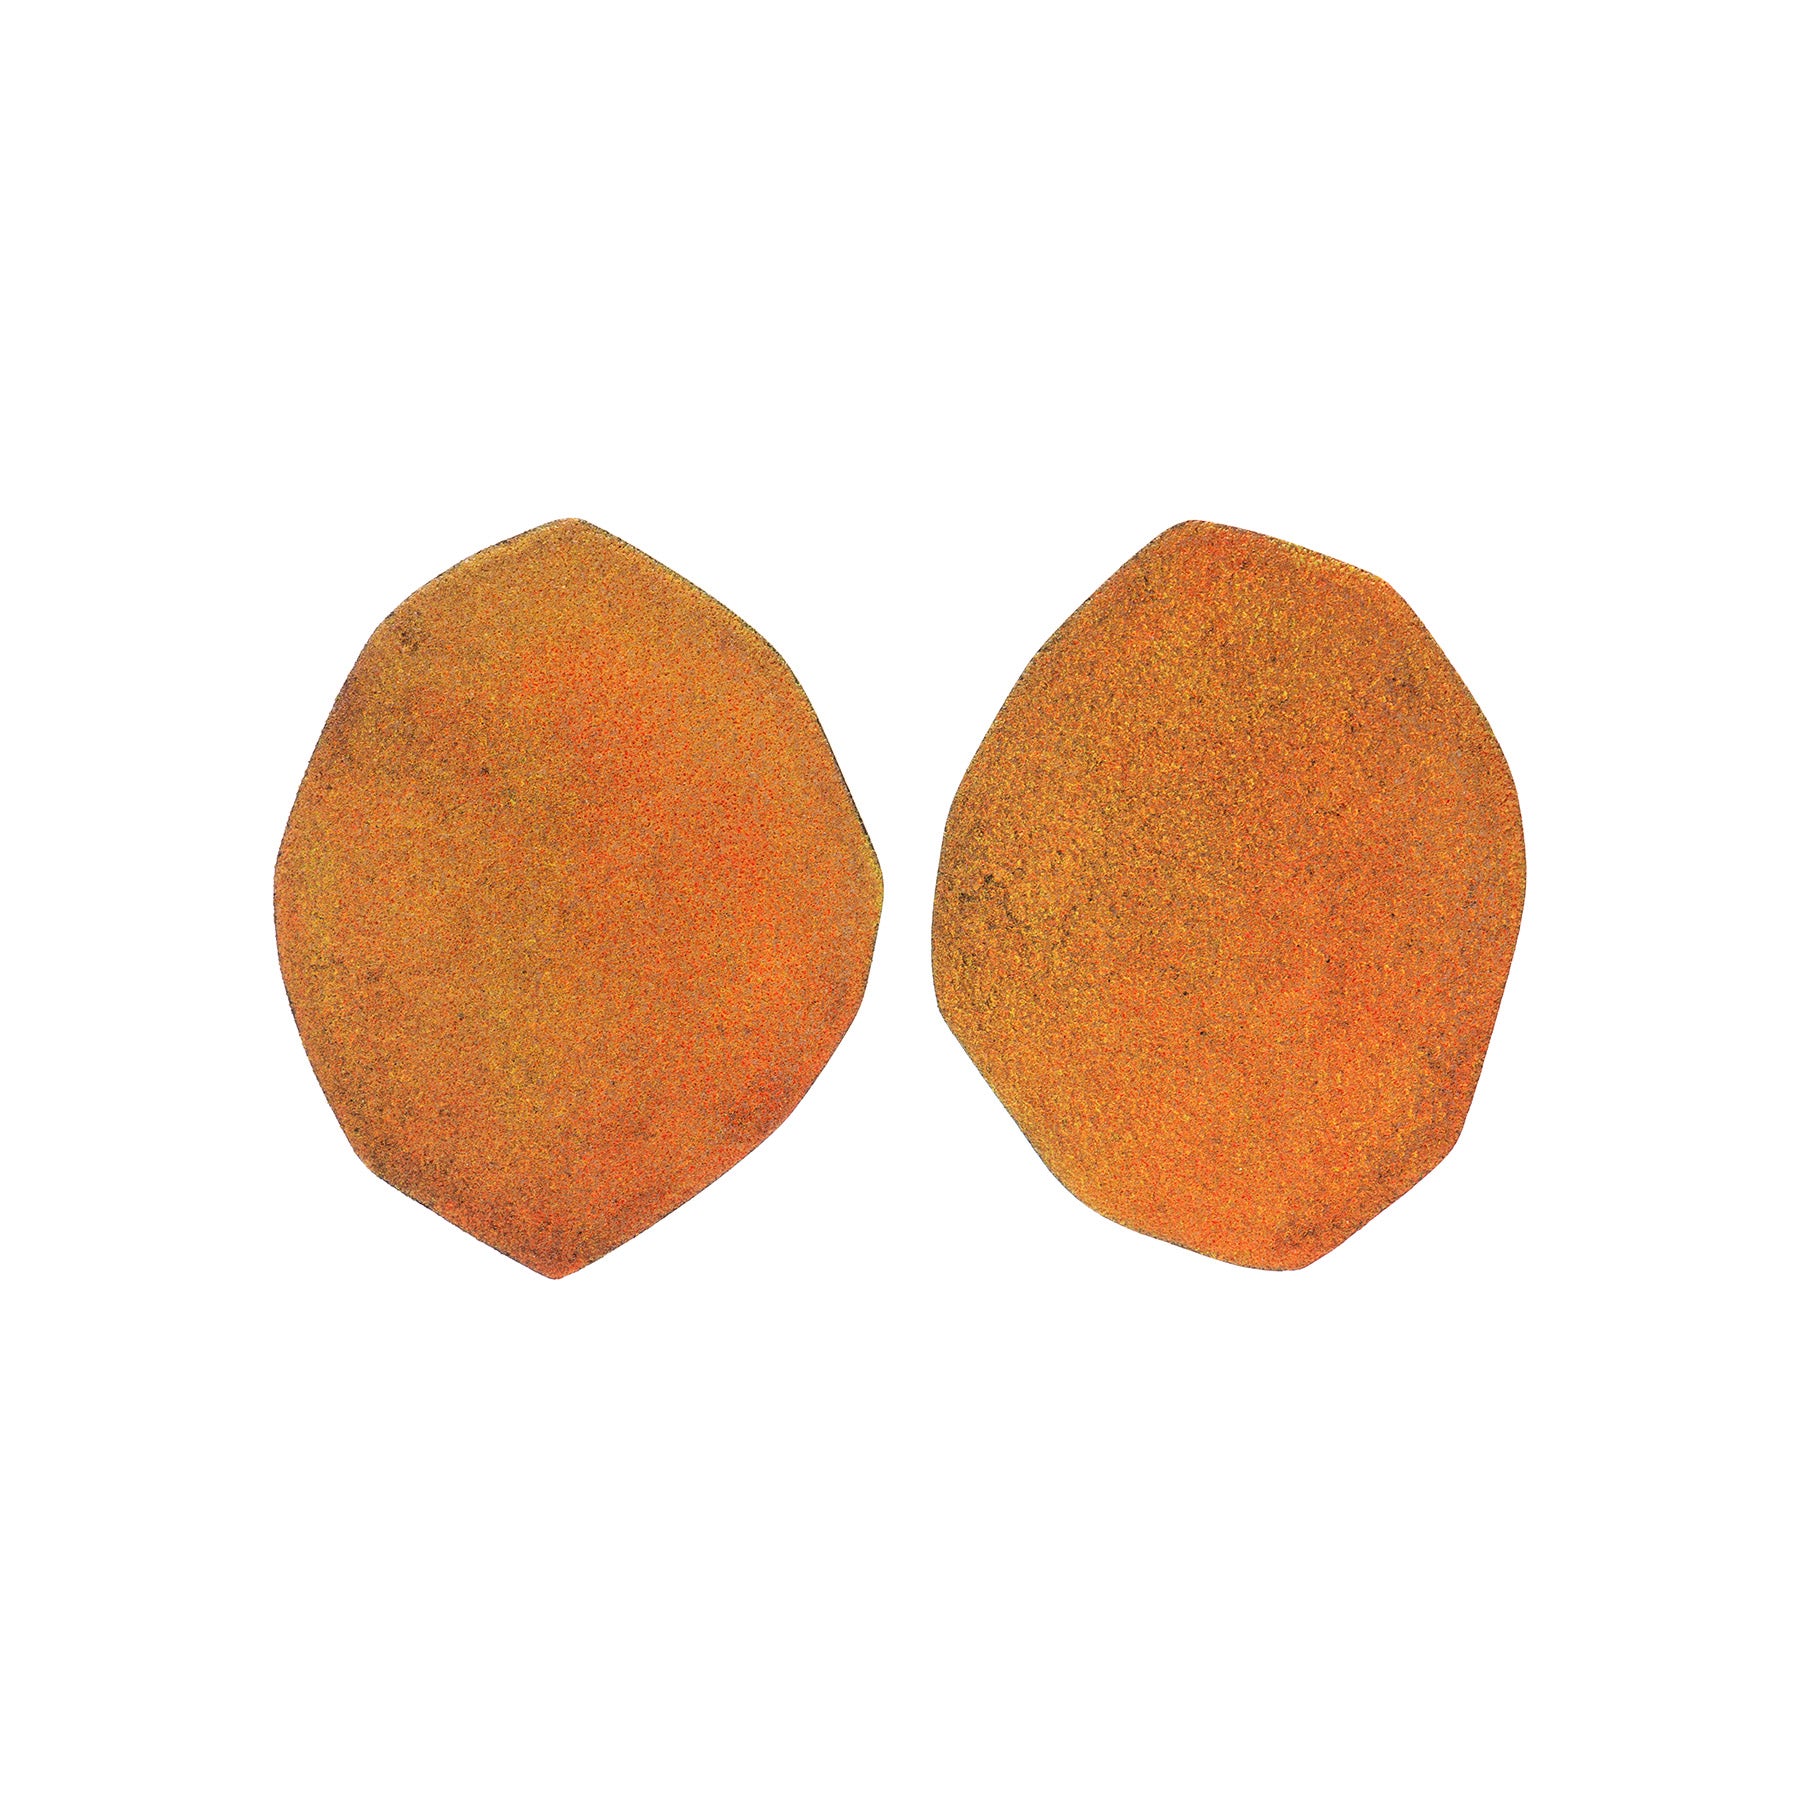 Enamel Palette Earrings, Mulit-Neon Orange+Yellow